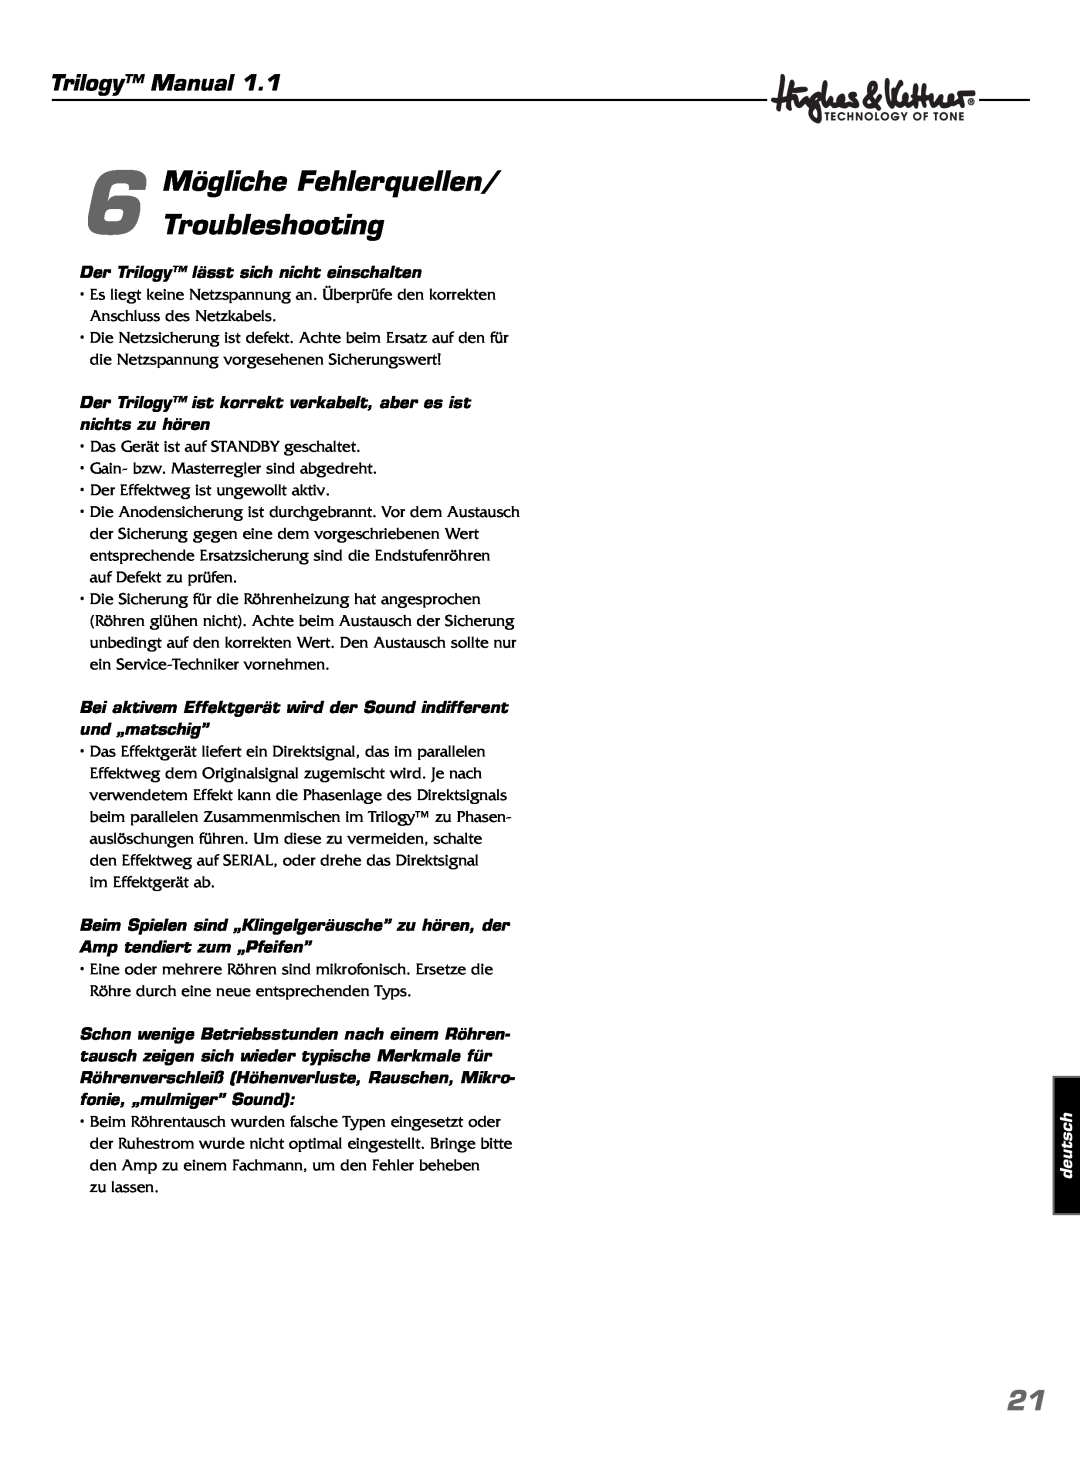 Hughes & Kettner TrilogyTM manual Mögliche Fehlerquellen 6 Troubleshooting, Trilogy Manual, deutsch 